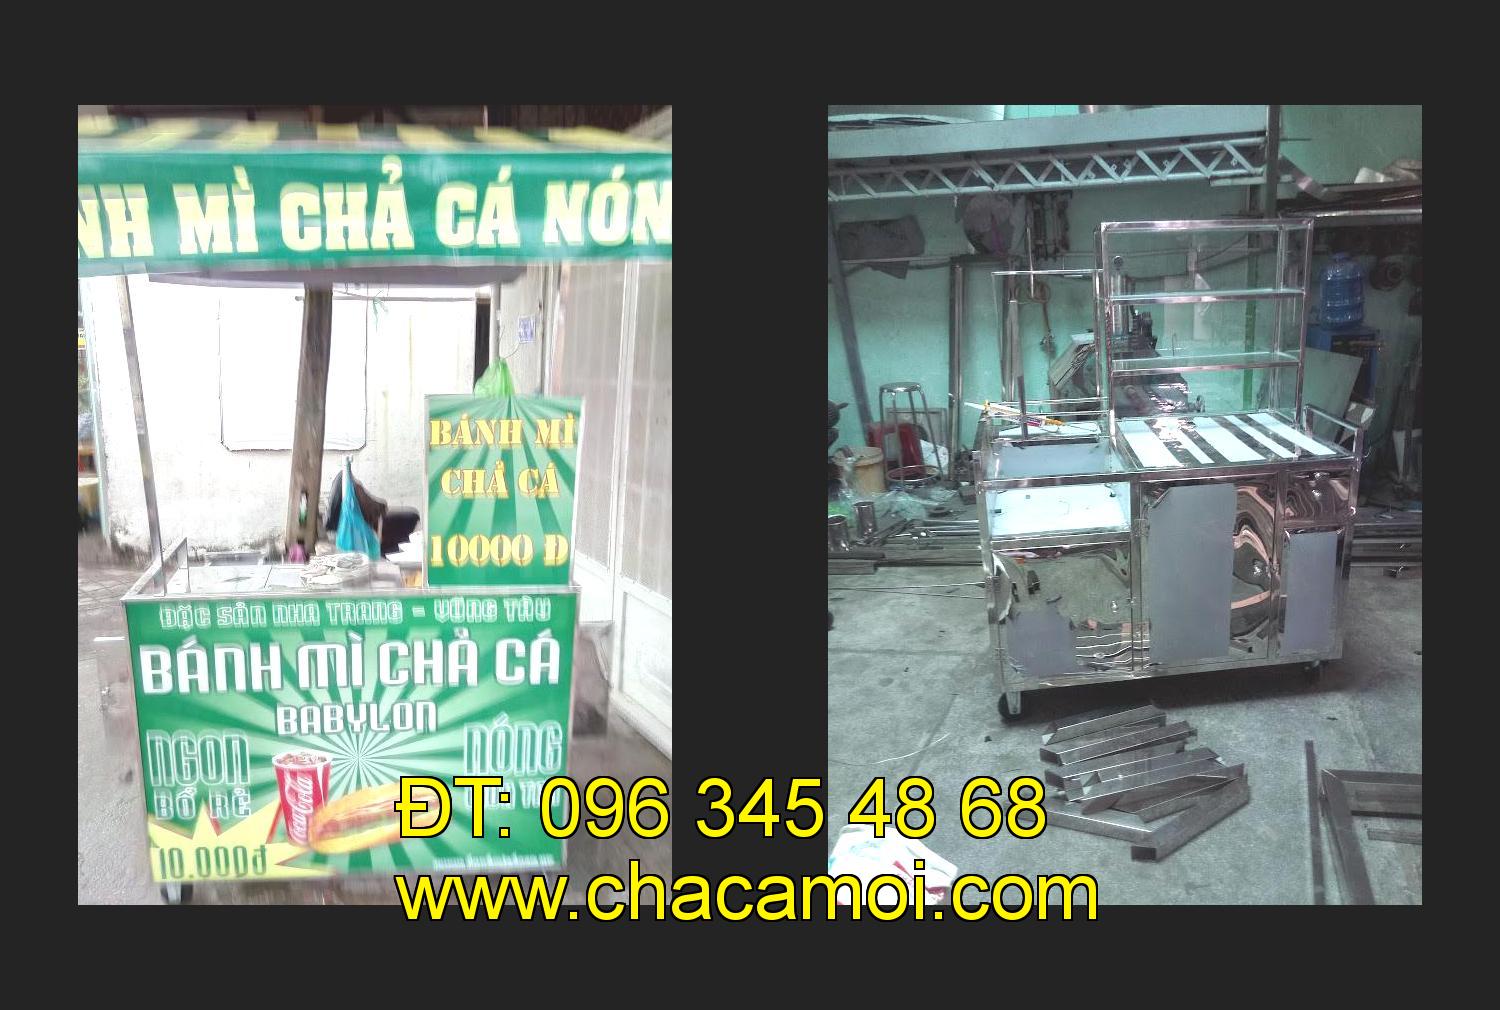 xe bánh mì chả cá inox tại tỉnh Đồng Tháp